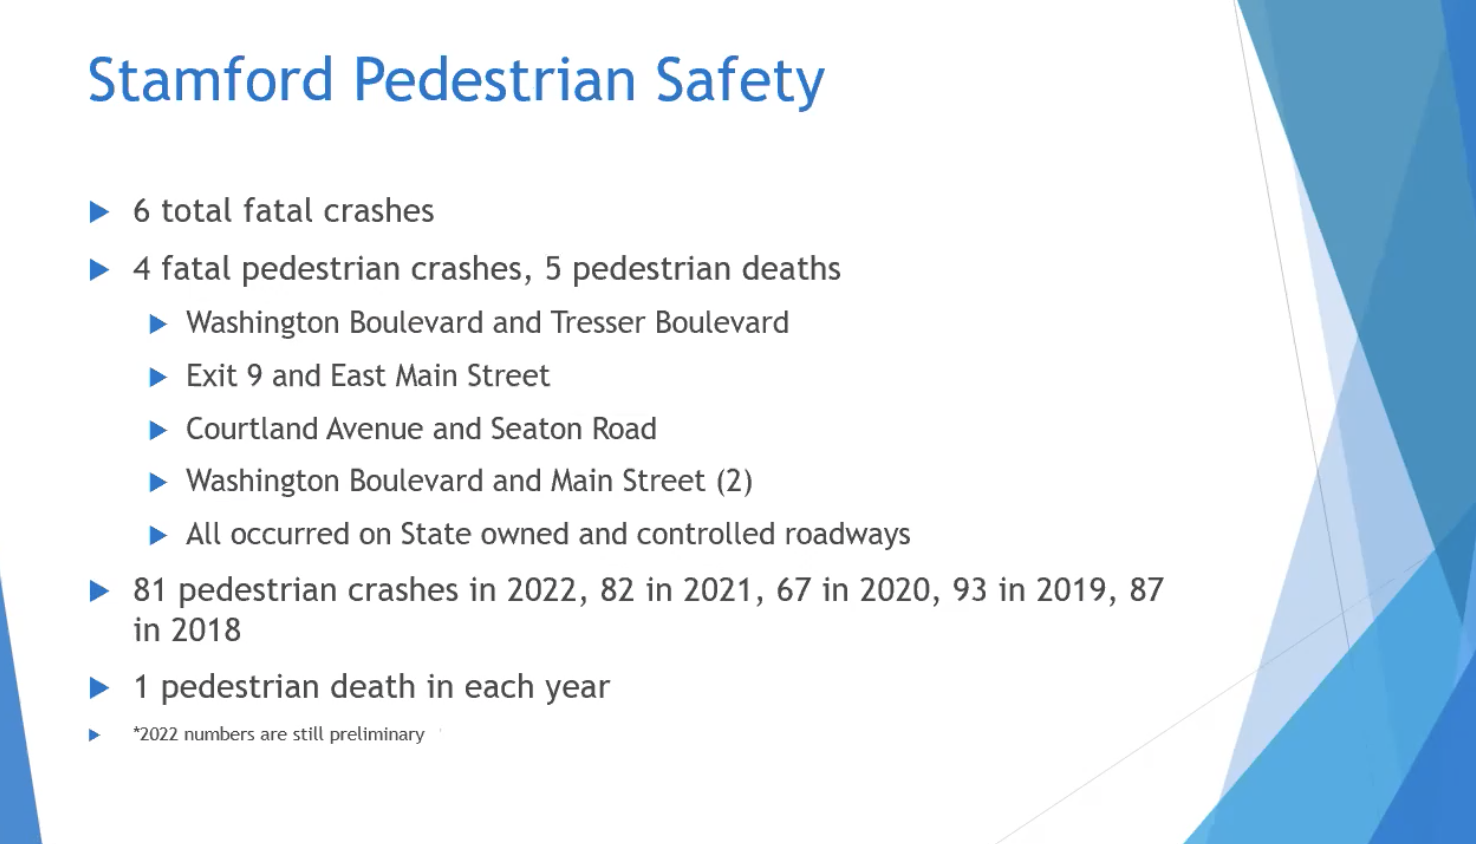 Data on Stamford pedestrian safety